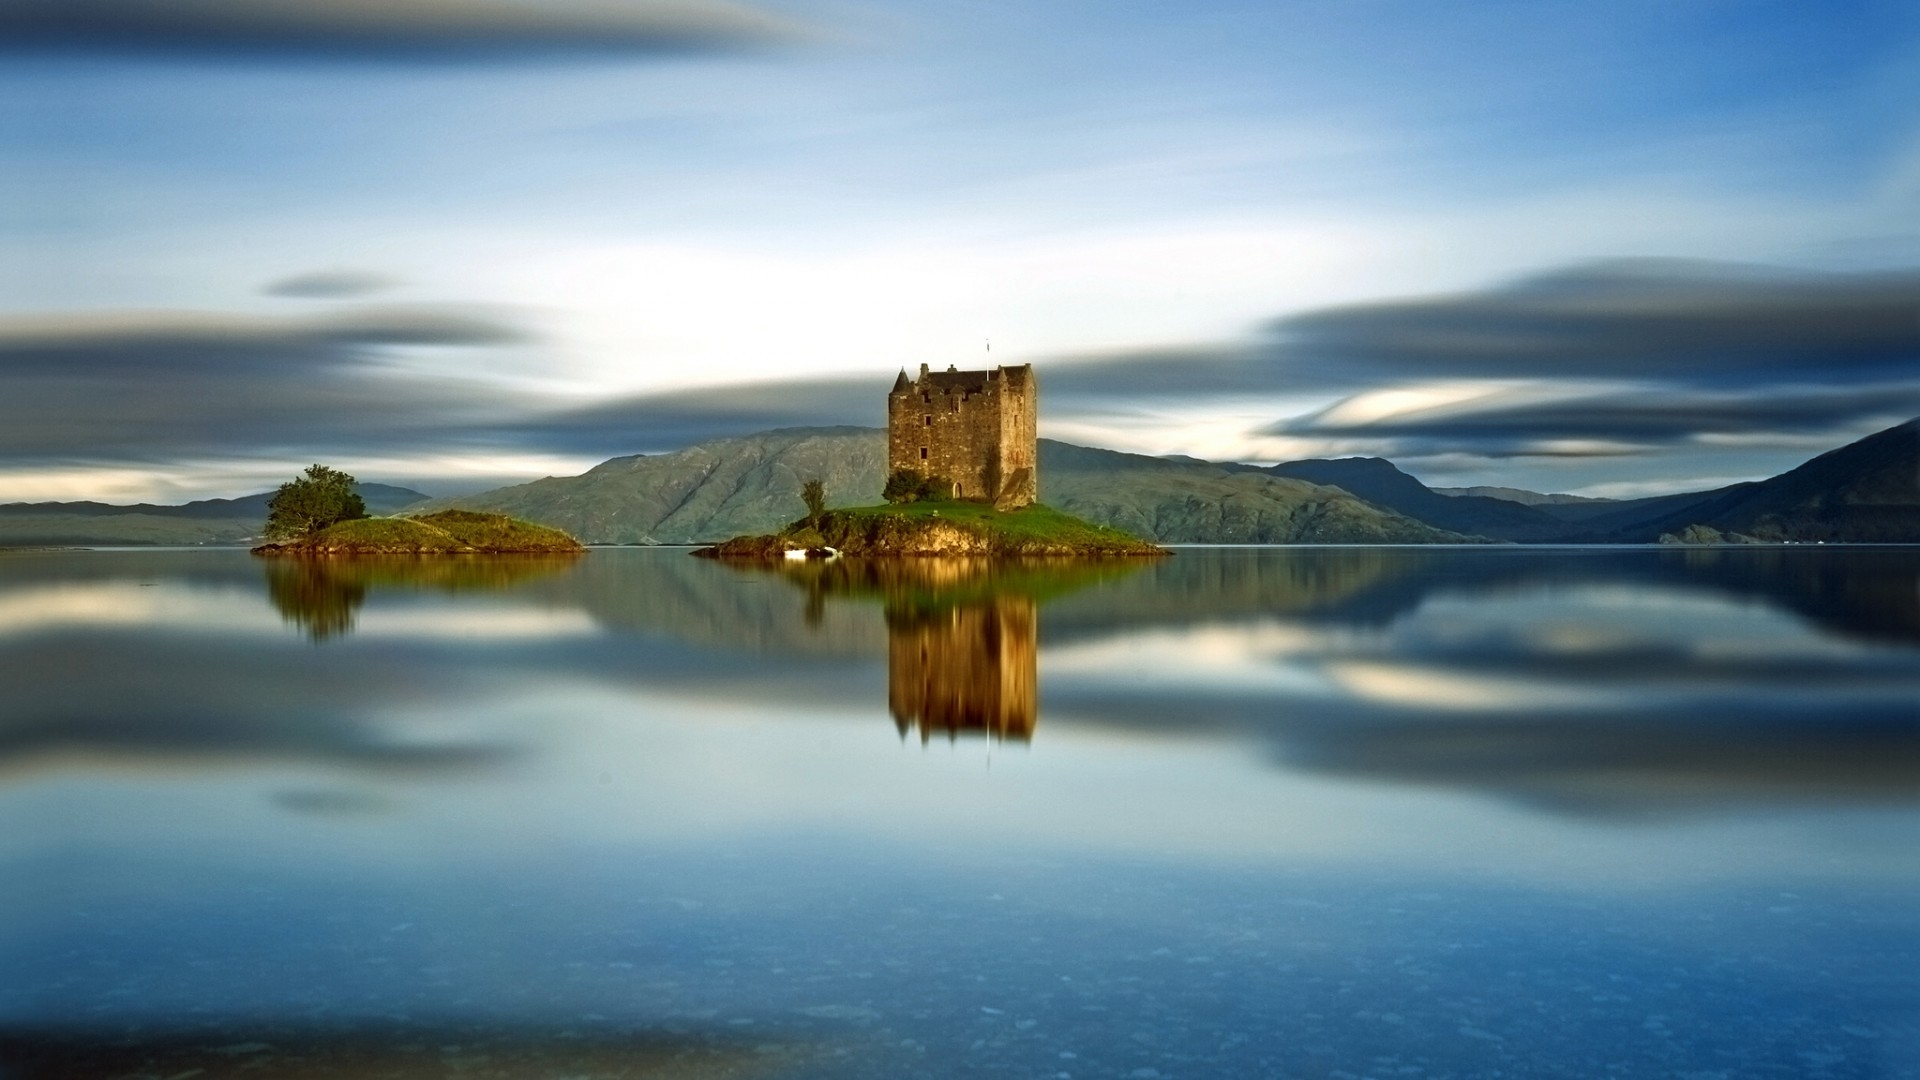 General 1920x1080 castle Scotland lake landscape reflection long exposure